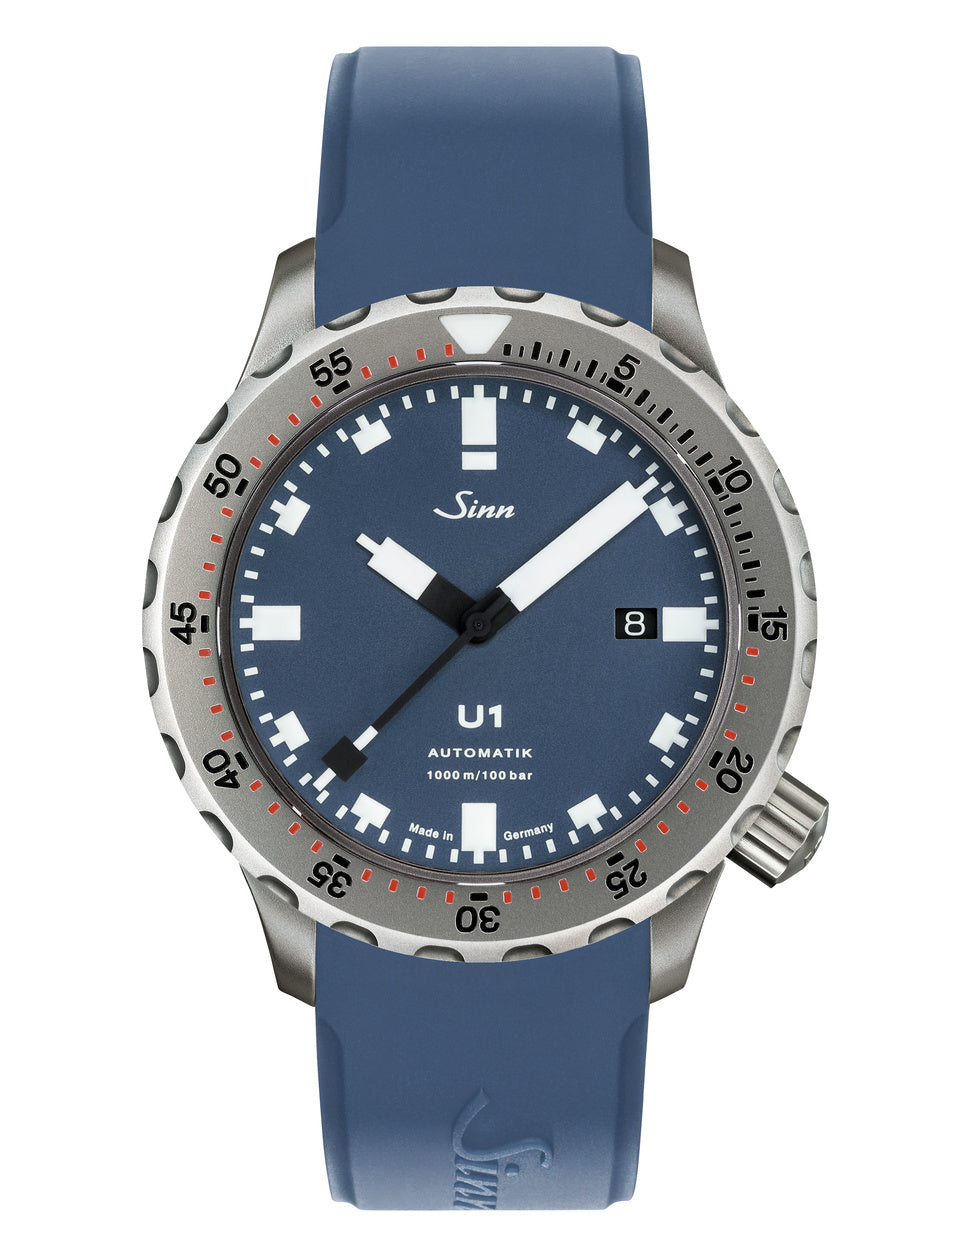 Sinn (ซินน์) นาฬิกาดำน้ำ U1 B สายซิลิโคน ขนาดตัวเรือน 44 มม. (U1 B)